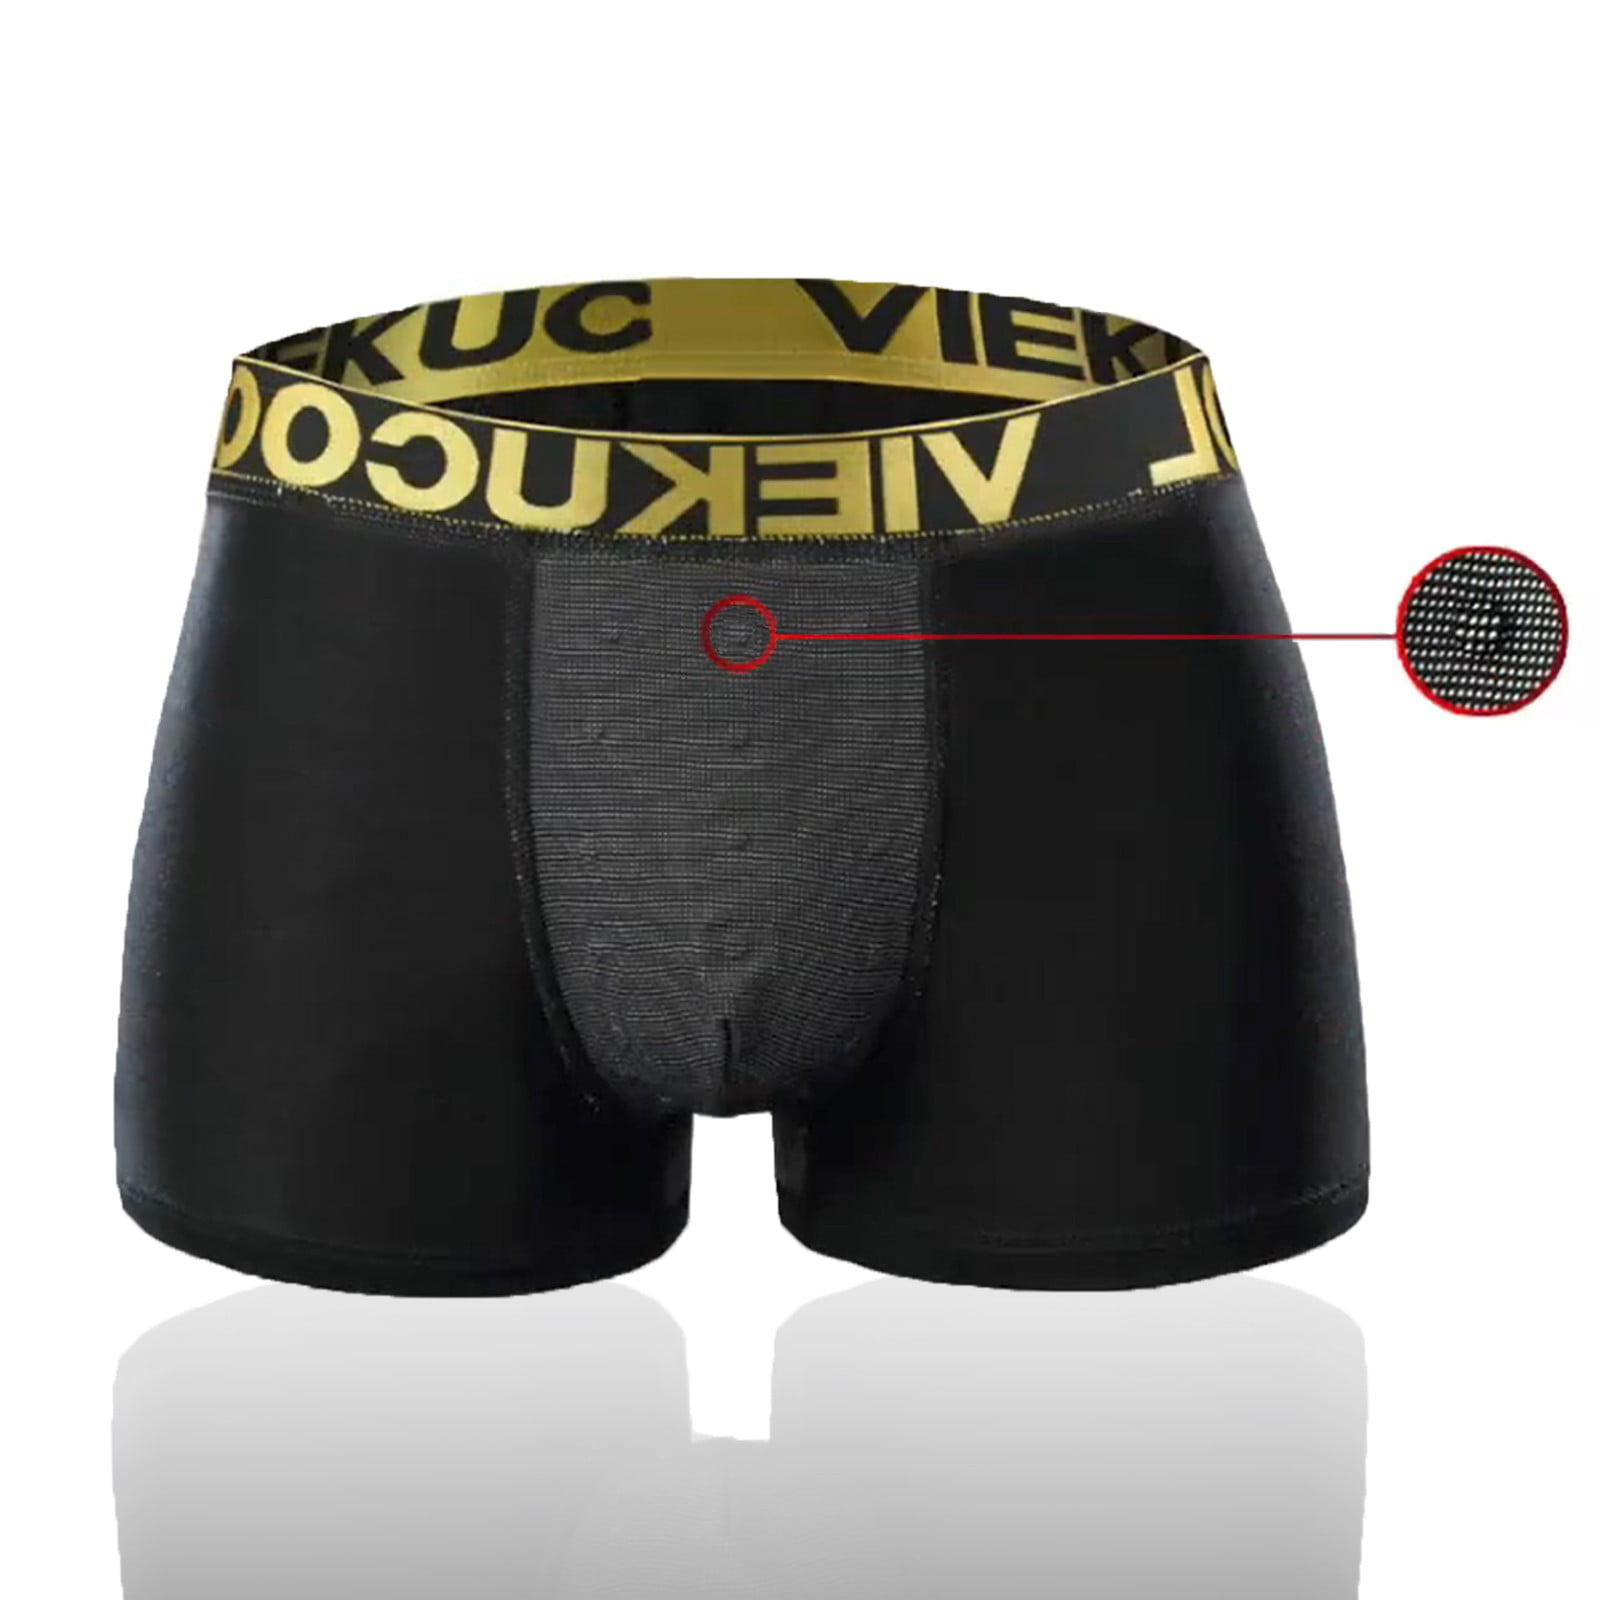 Aayomet Brief For Men Underwear Men's Cotton Stretch Underwear